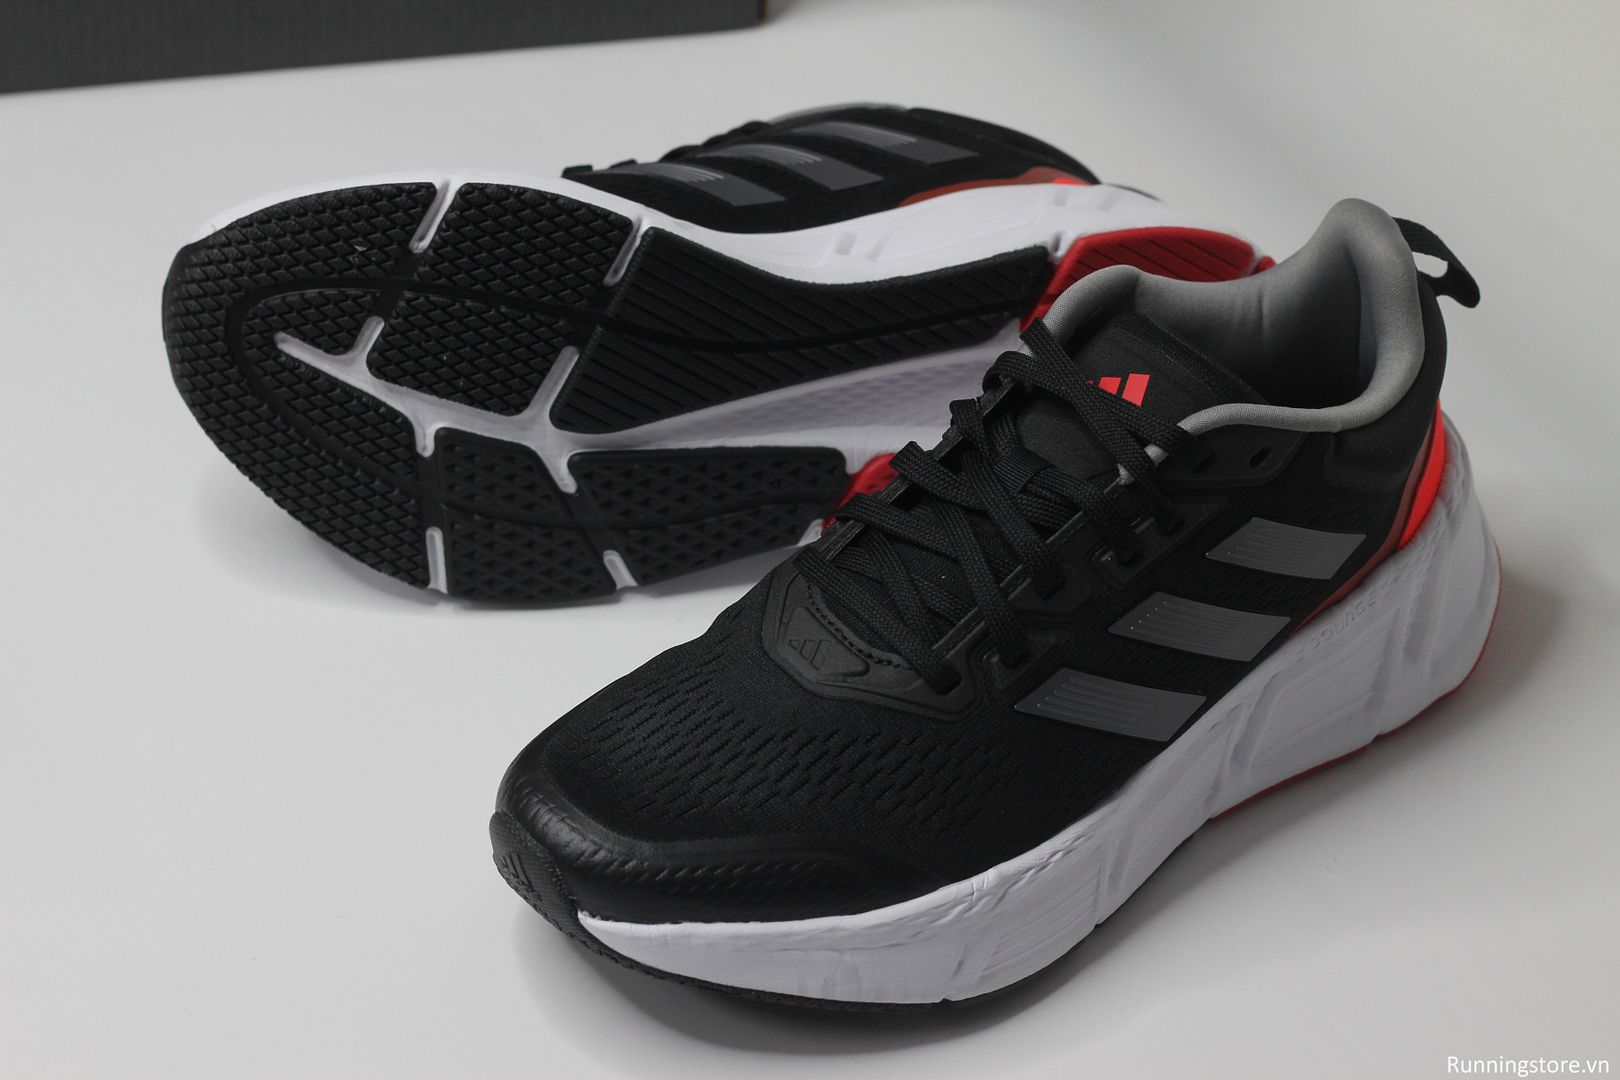 Giày chạy bộ Adidas Questar màu đen trắng bạc HP2433